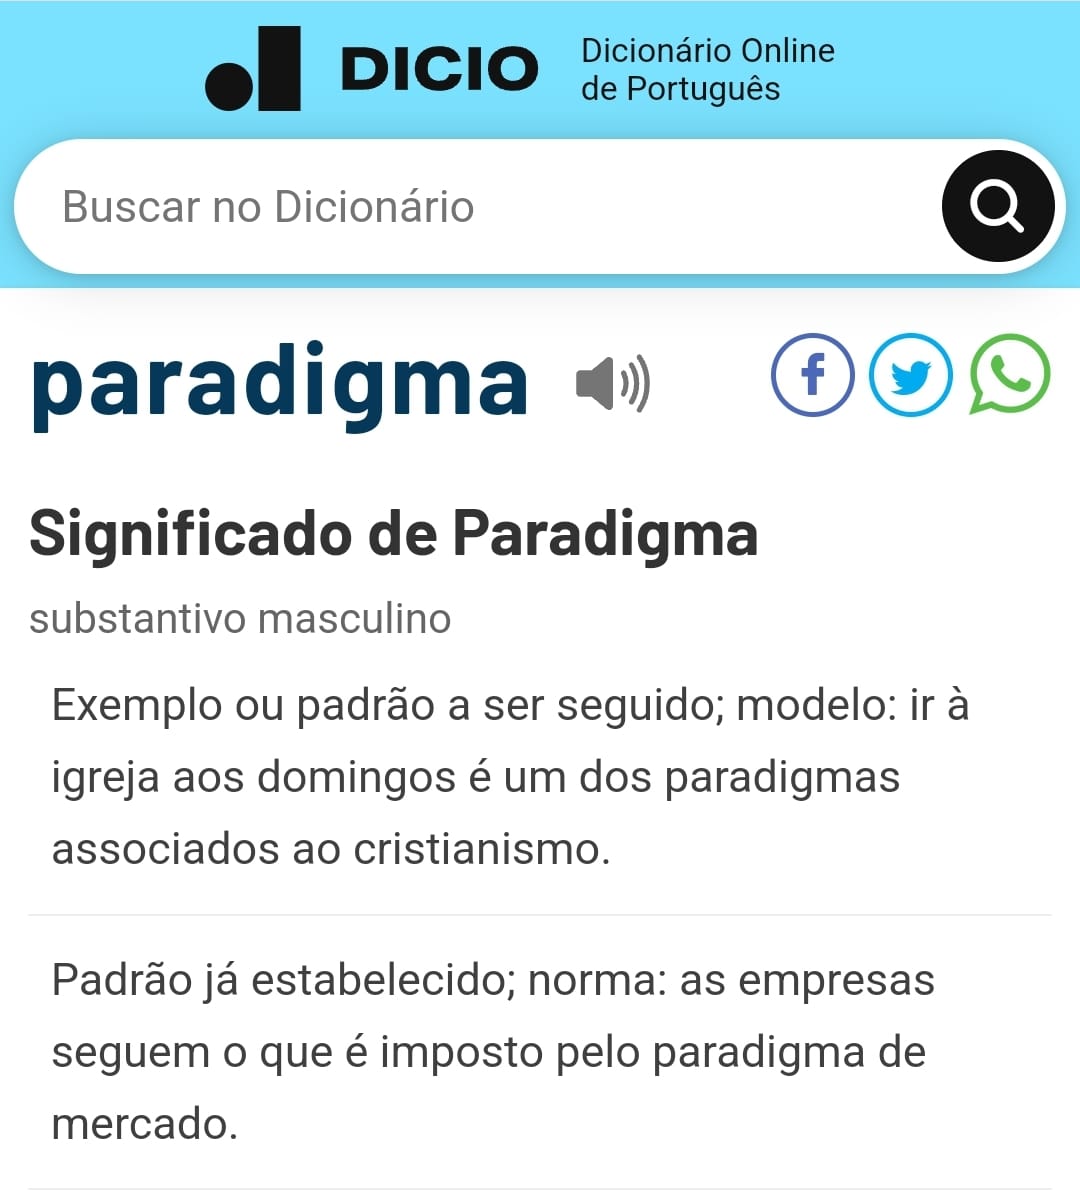 Relevância - Dicio, Dicionário Online de Português